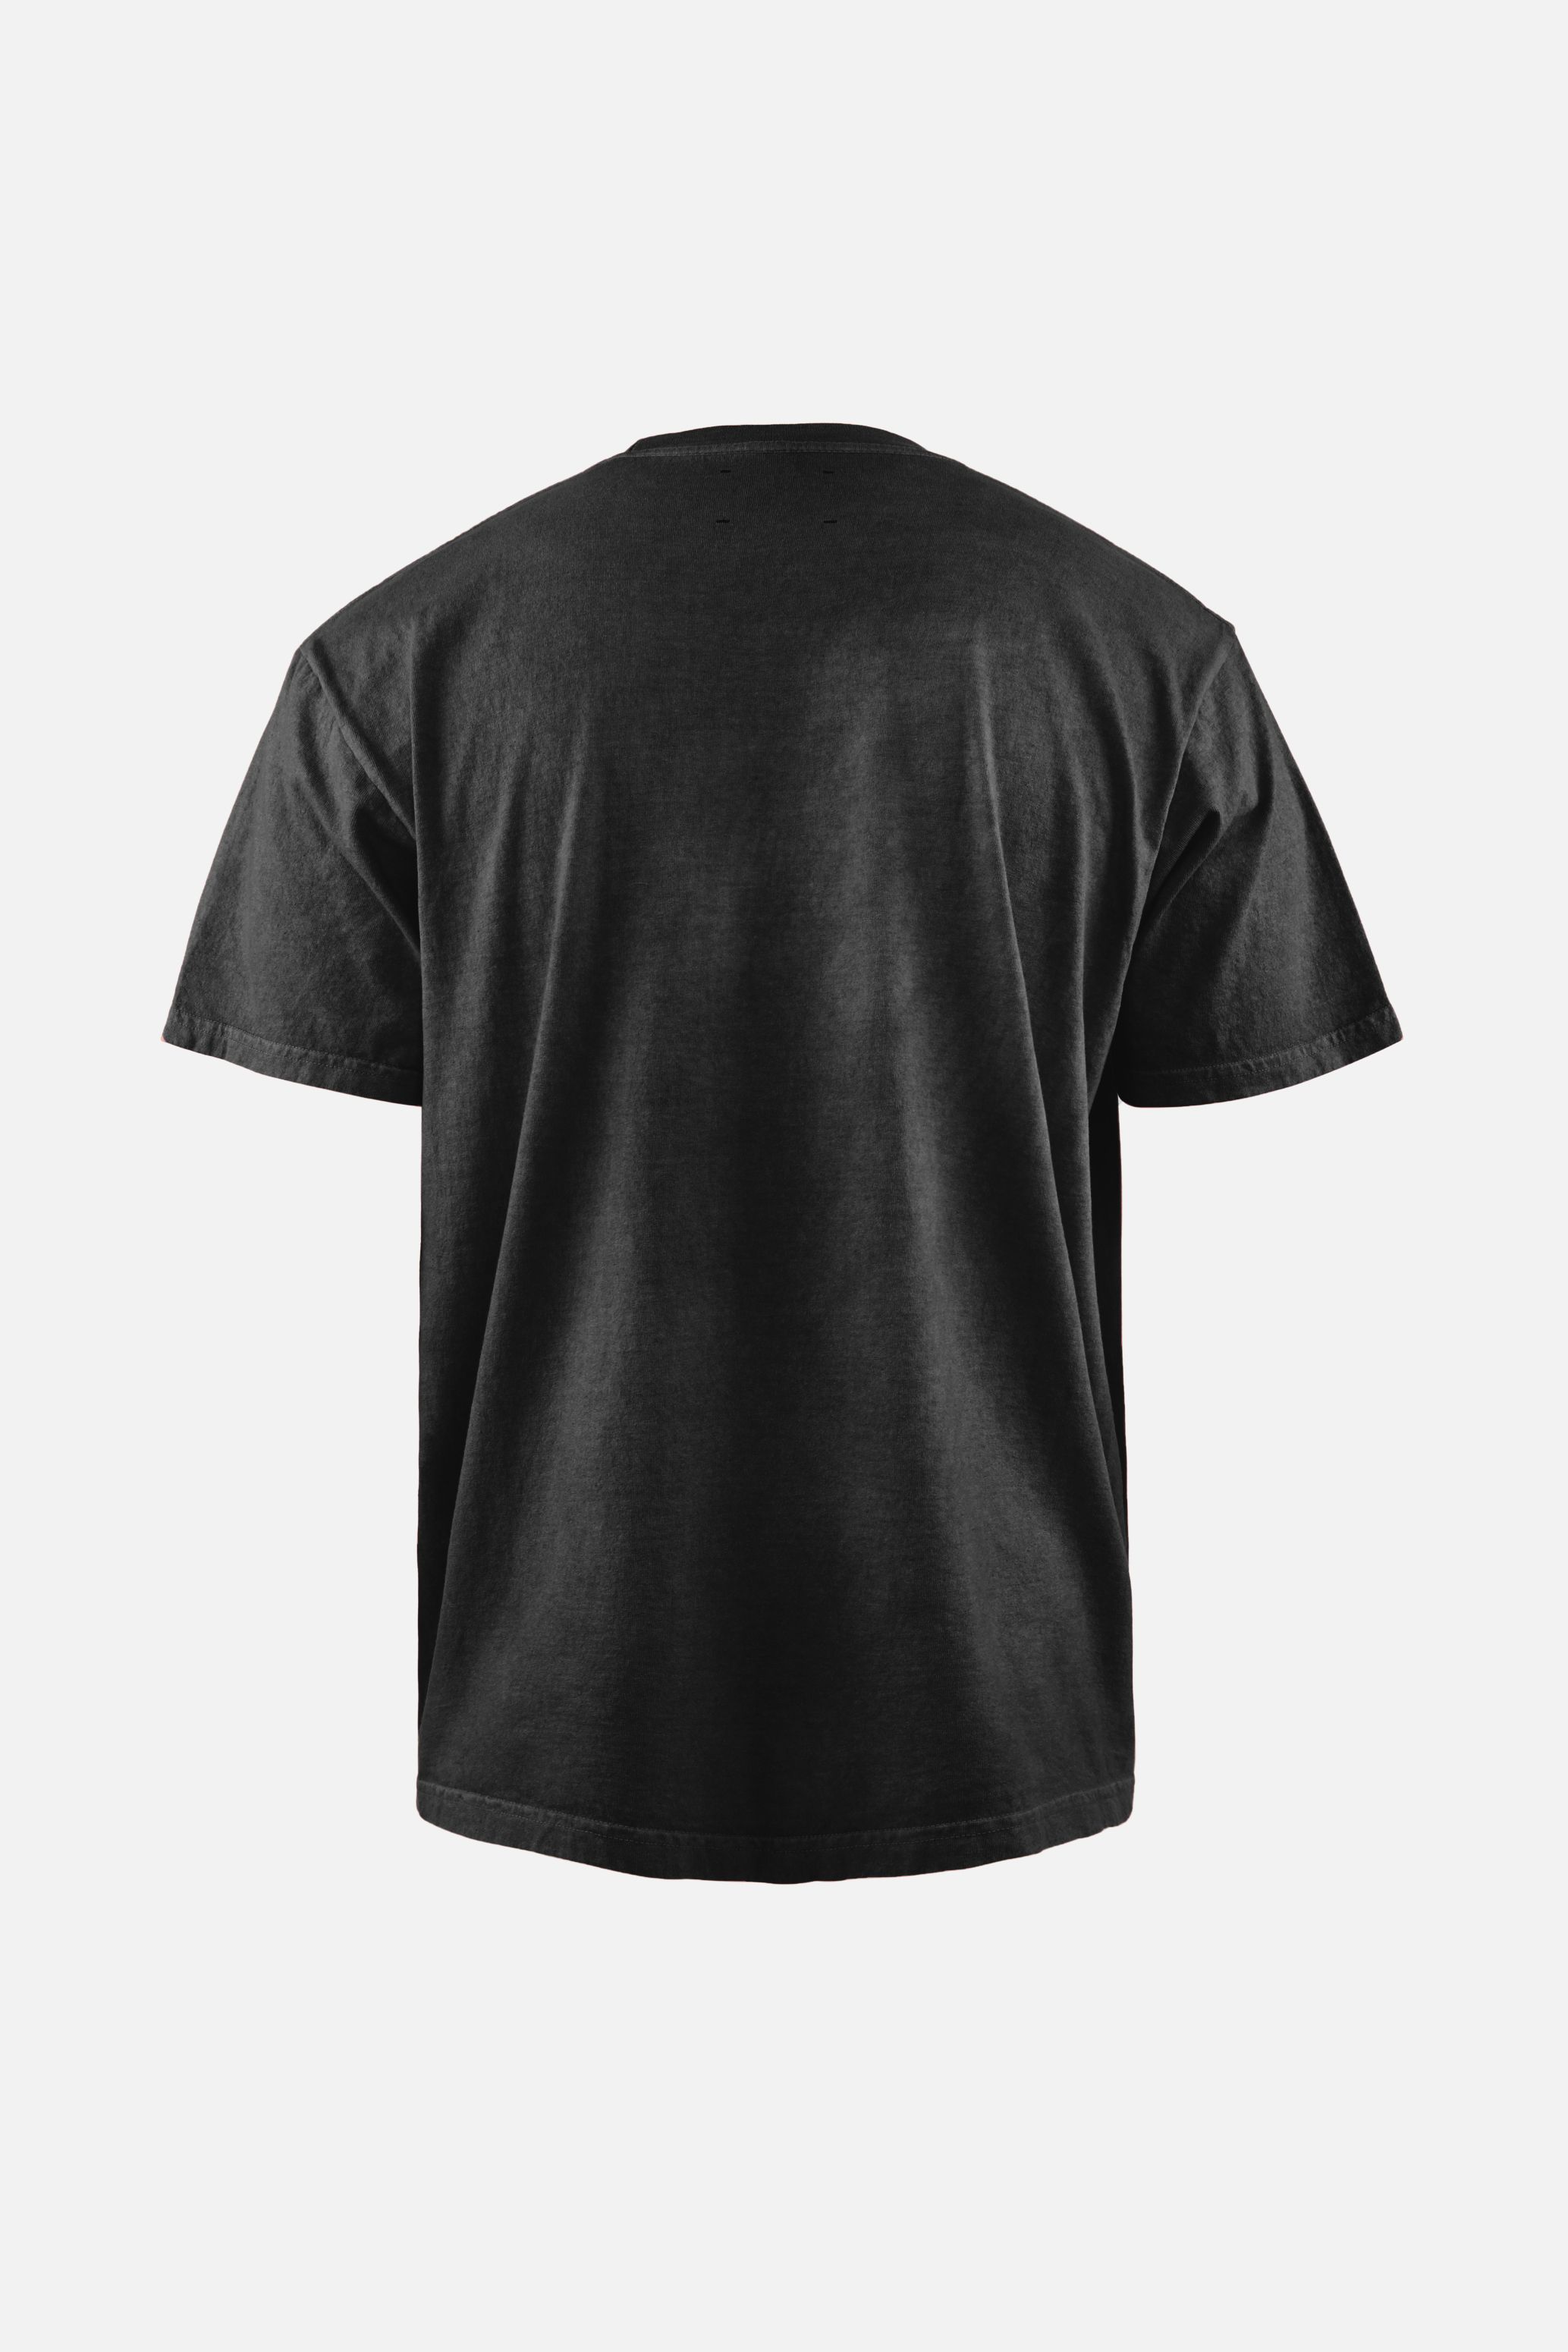 Karuna Short Sleeve T-Shirt, Black Motion